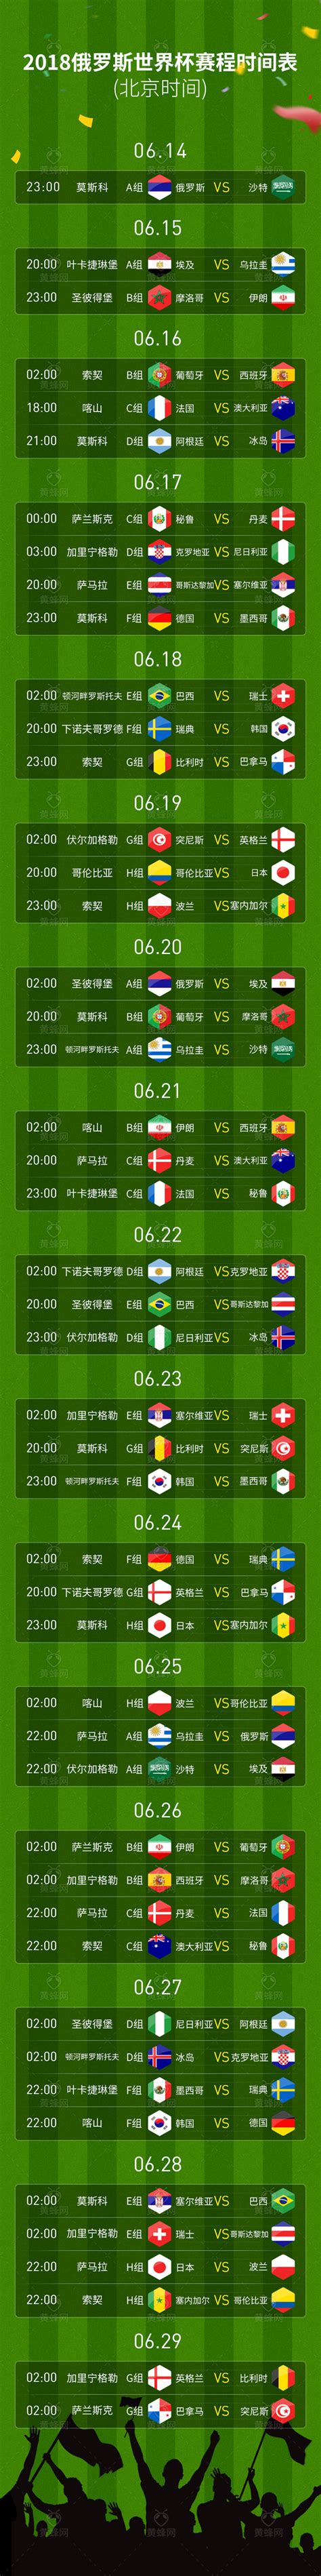 2018世界杯赛程表素材 - 素材 - 黄蜂网woofeng.cn